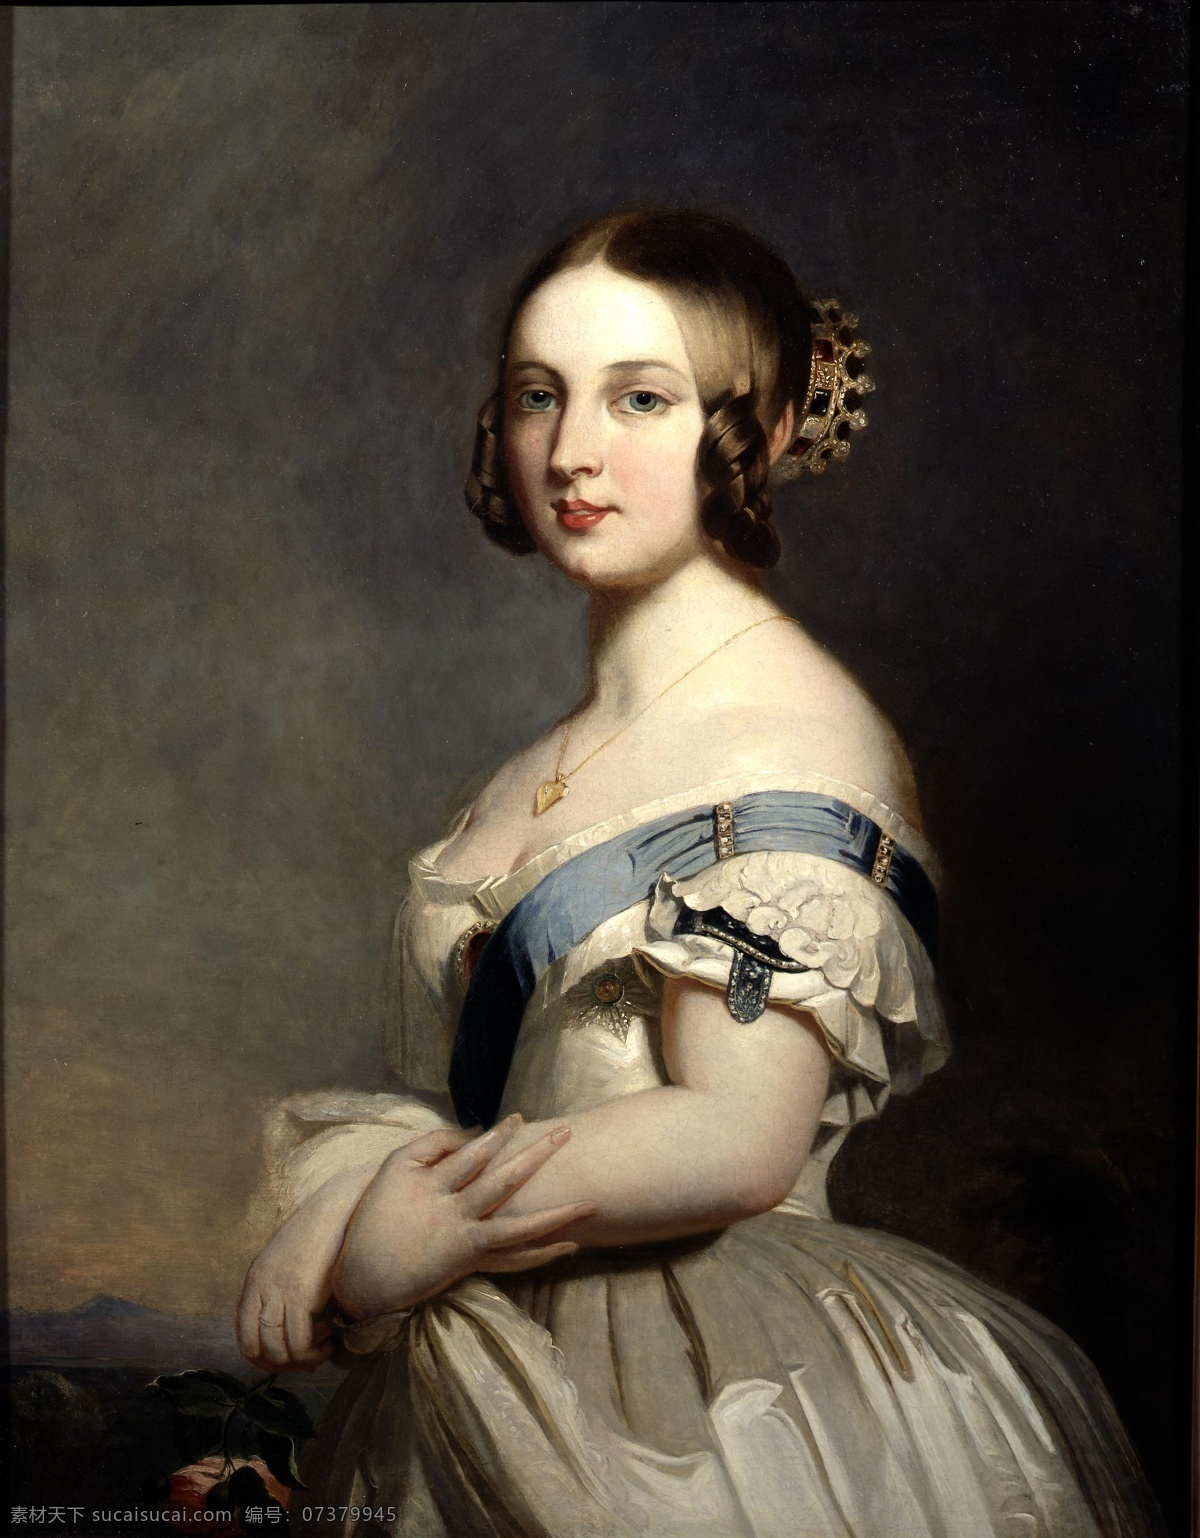 年轻 维多利亚 女王 德国画家 弗朗茨 温特 哈特 作品 英国女王 18岁 19世纪油画 油画 绘画书法 文化艺术